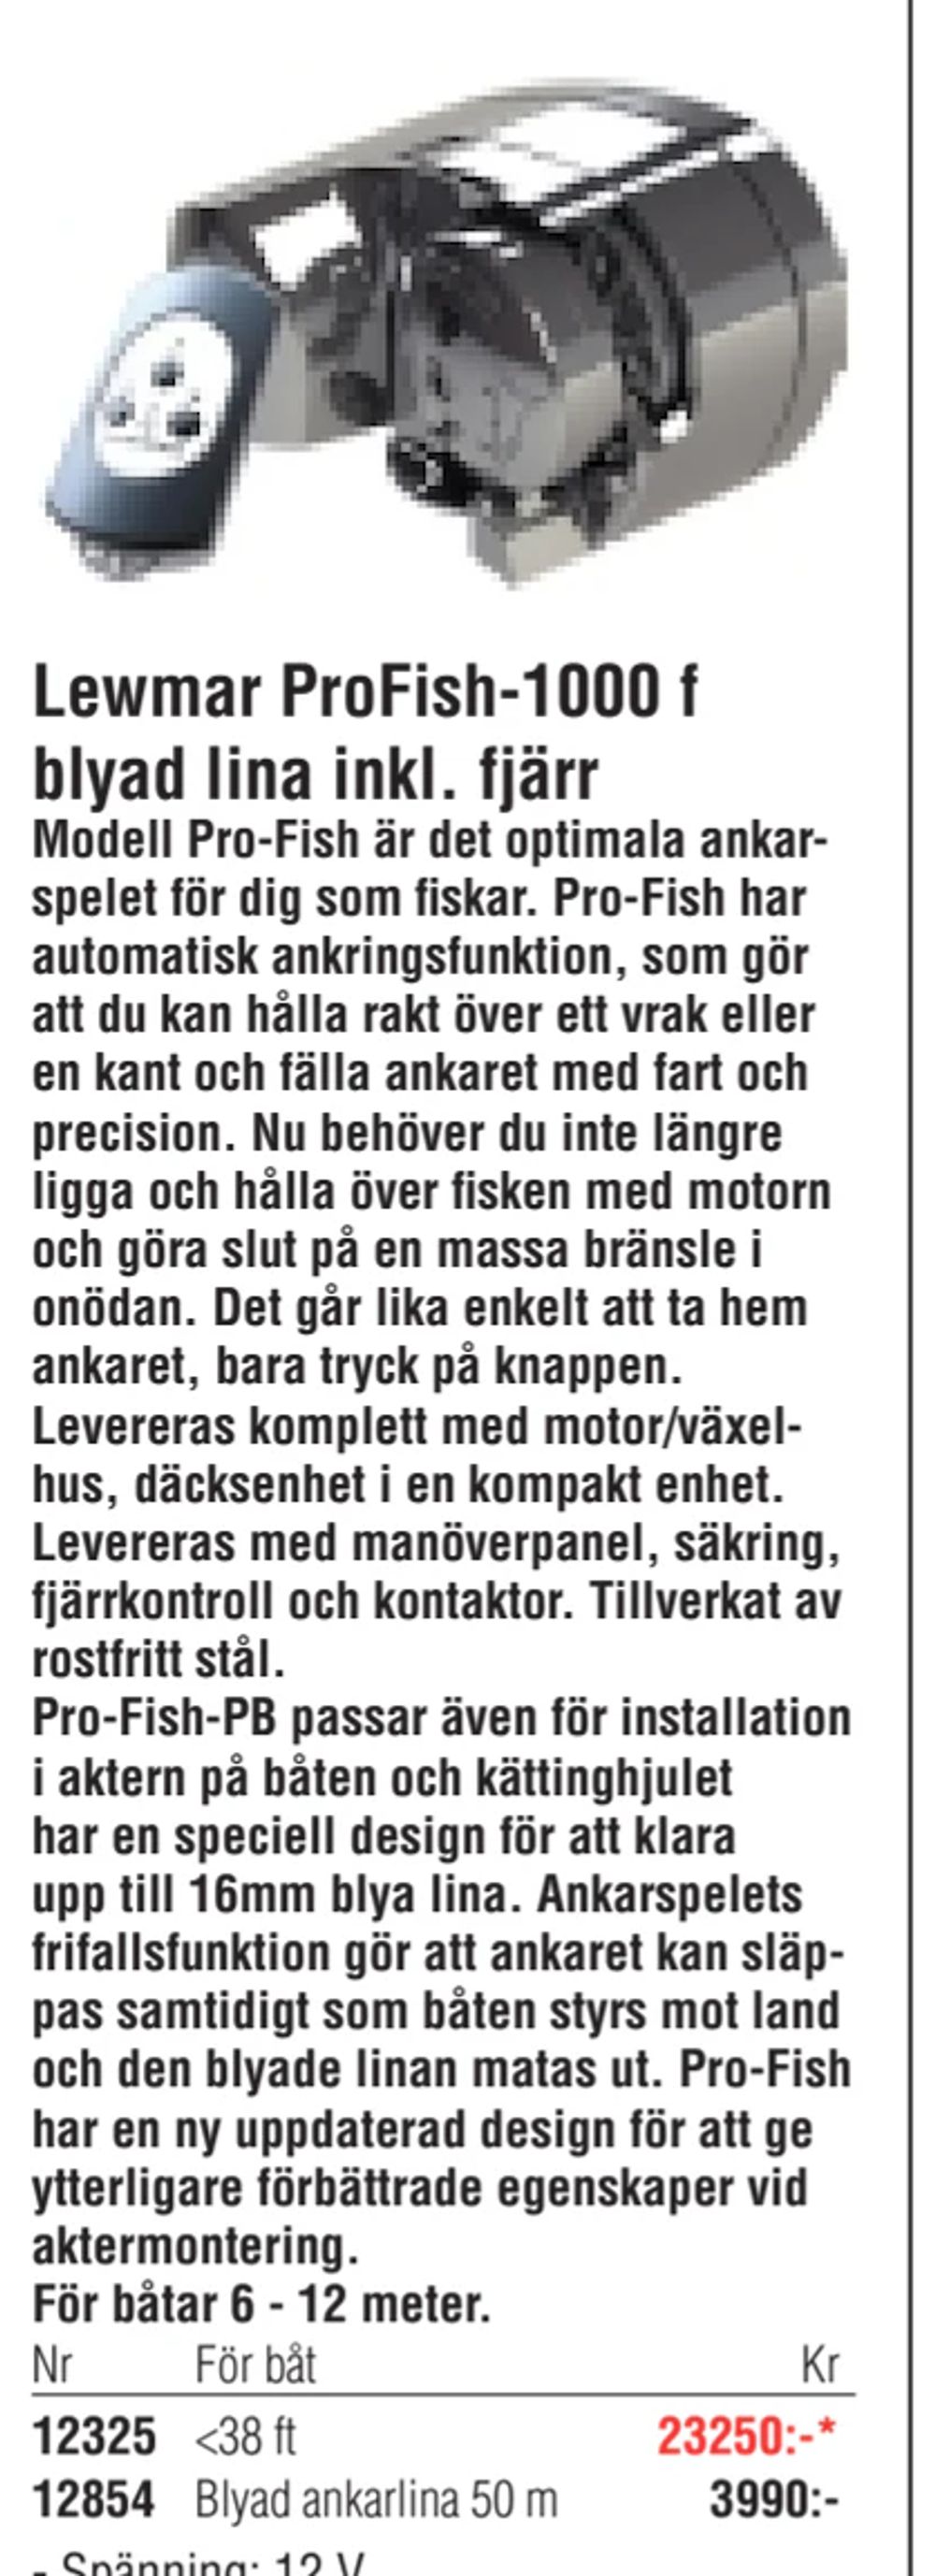 Erbjudanden på Lewmar ProFish-1000 f blyad lina inkl. fjärr från Erlandsons Brygga för 3 990 kr